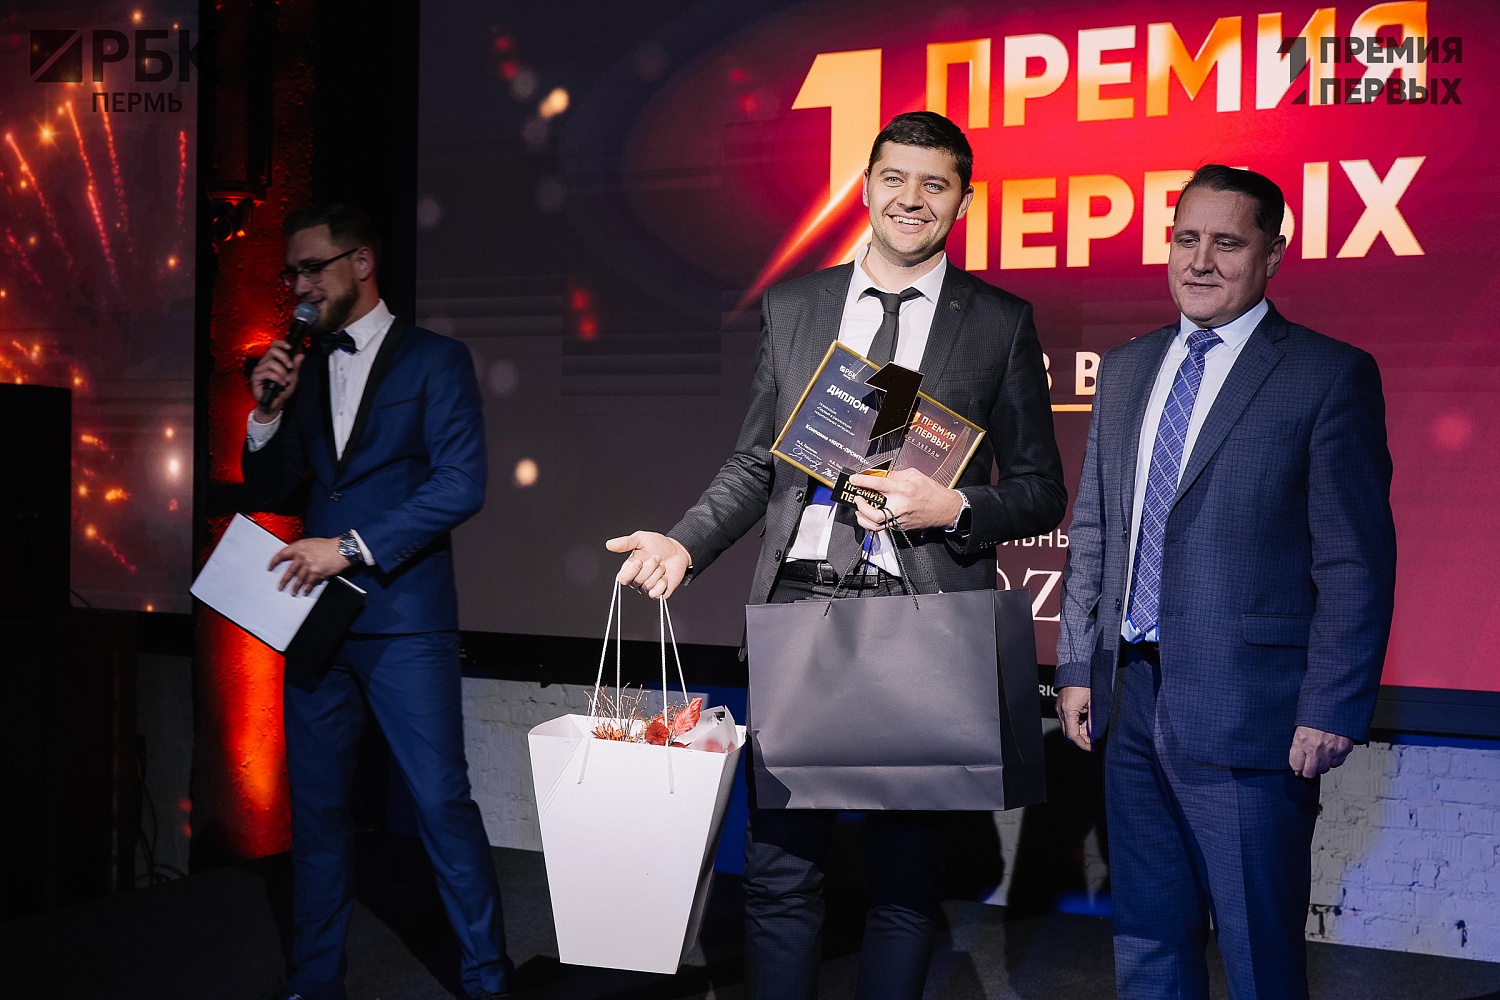 Компания ИНГК стала лауреатом «Премии первых. Все звезды» от Медиахолдинга РБК Пермь в номинации «Первый в реализации национальных интересов» 